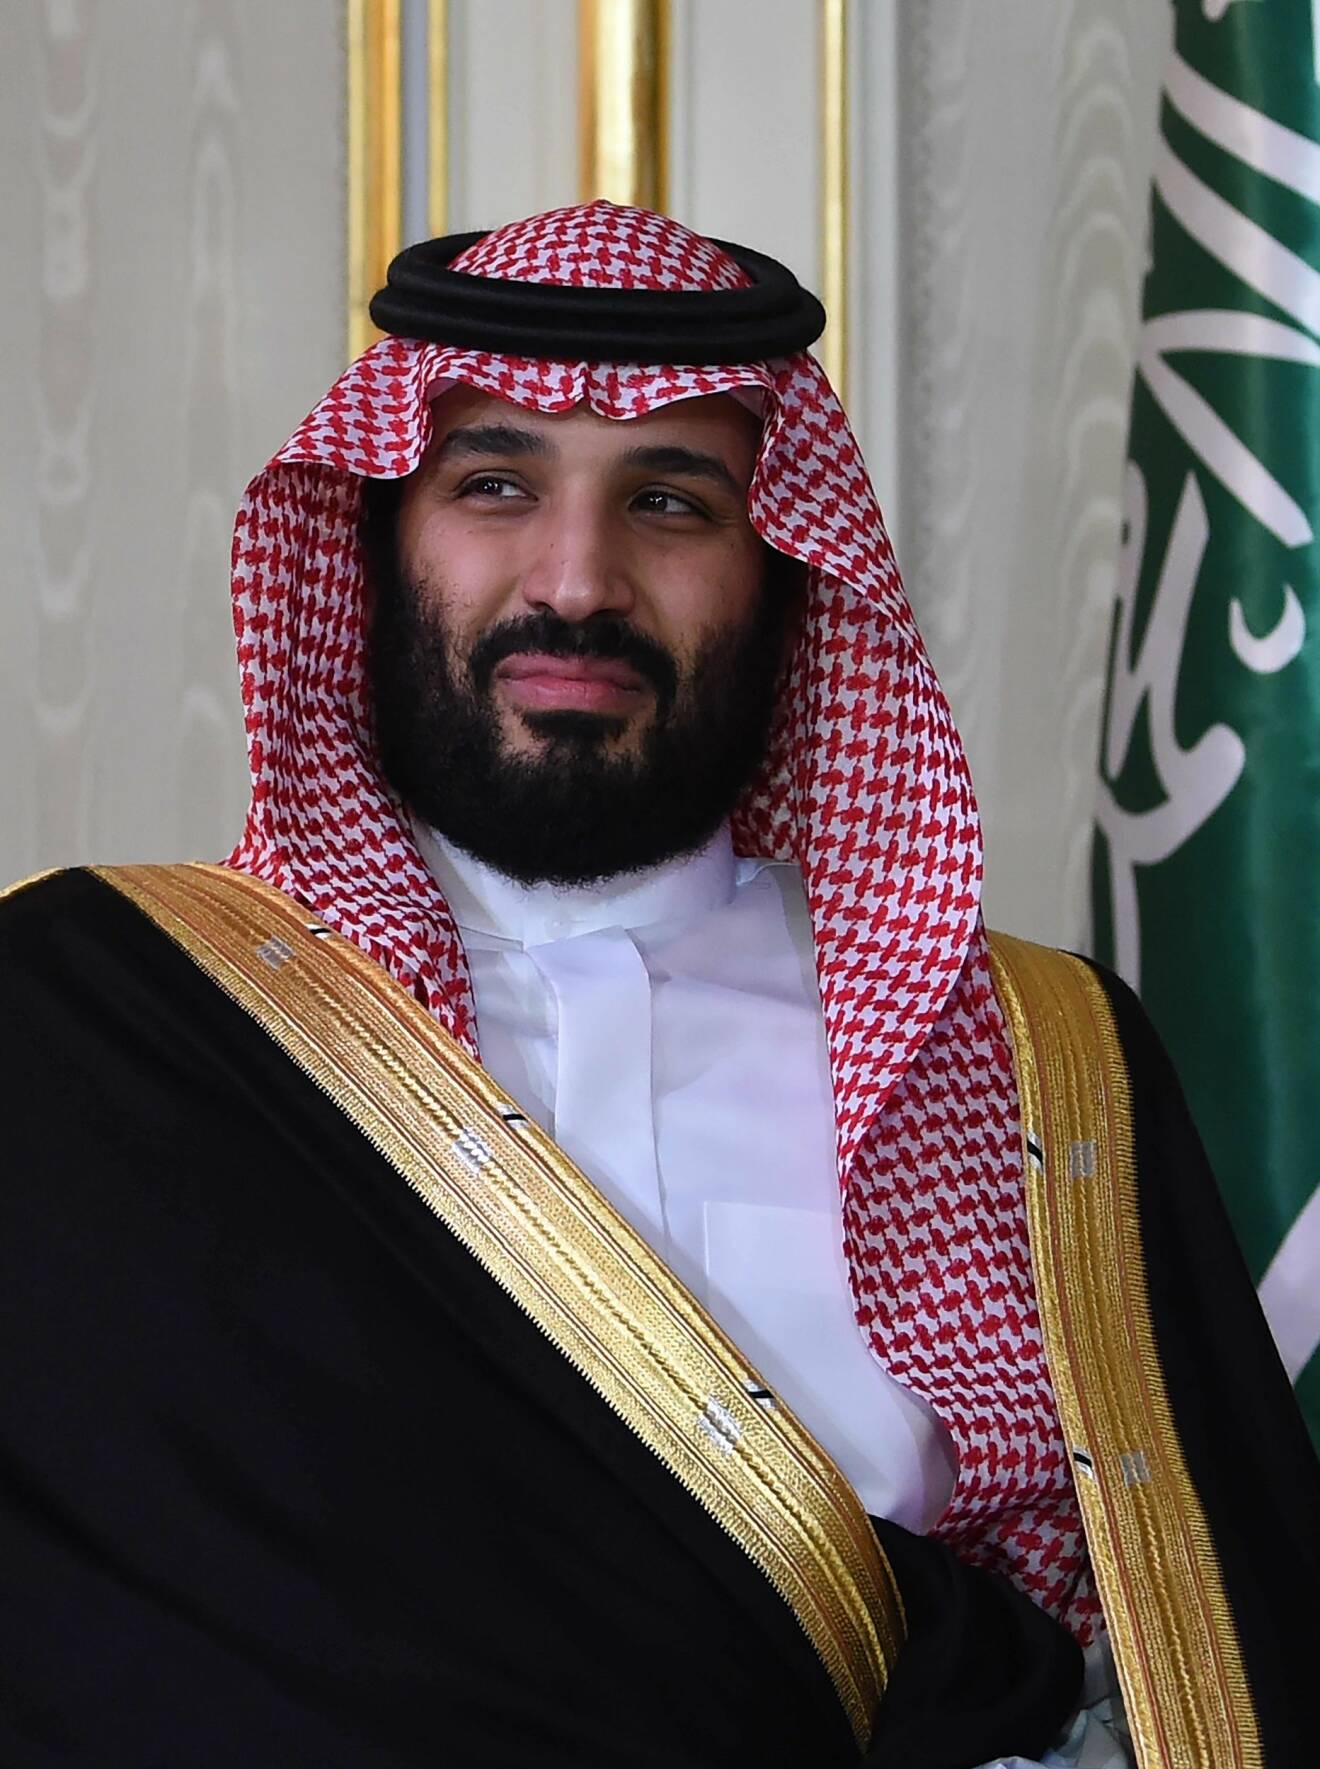 Mohammed bin Salman, MBS, kronprins i Saudiarabien godkände operation i Istanbul enligt amerikansk säkerhetstjänst.